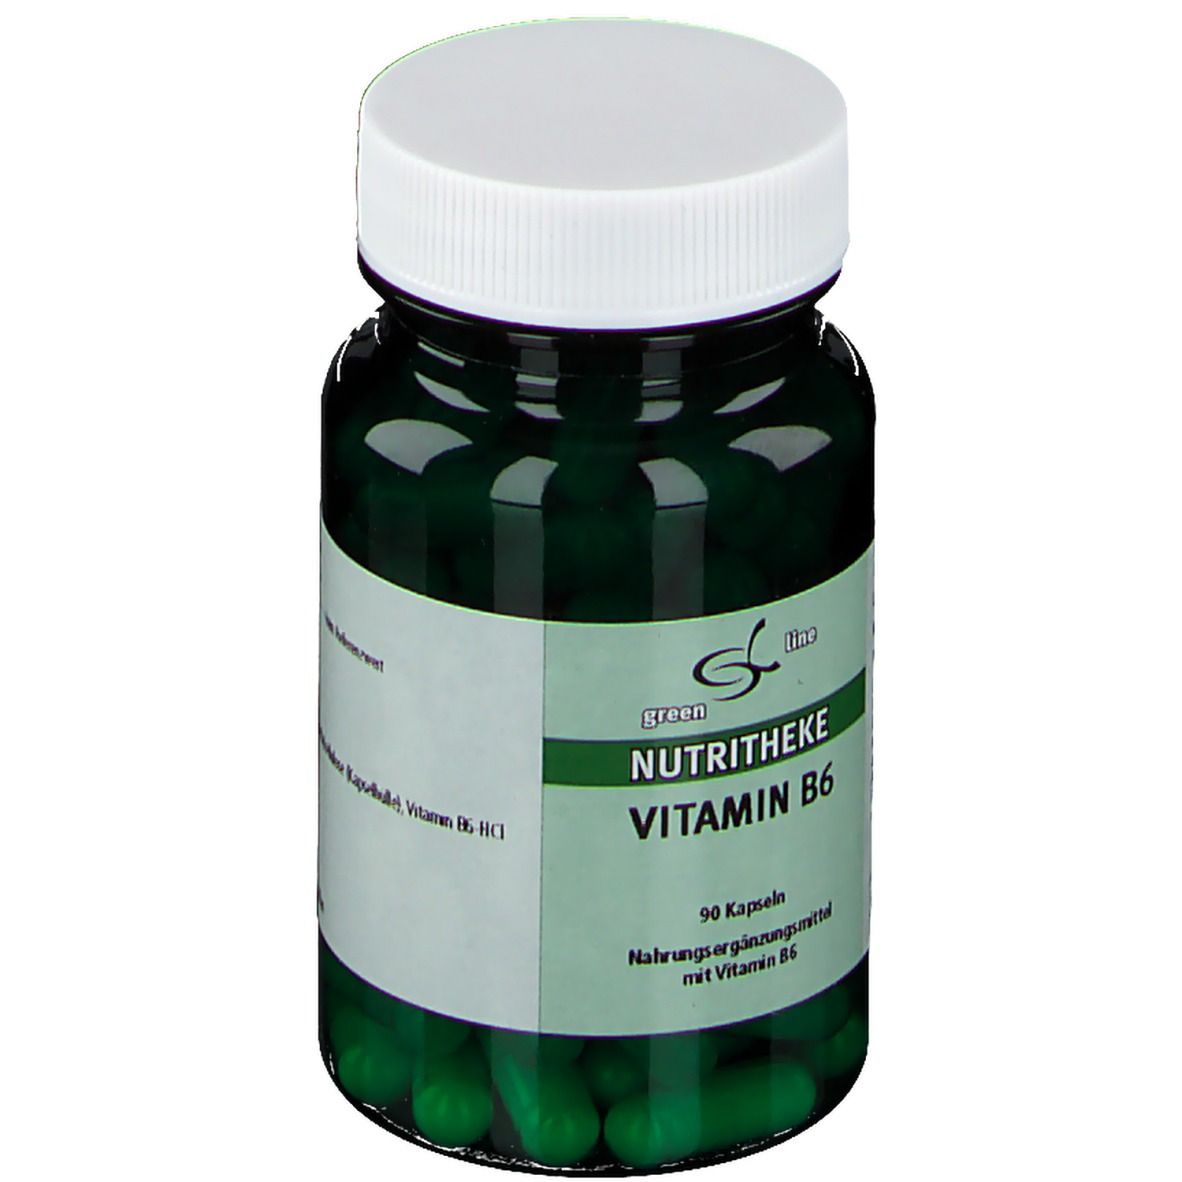 Nutritheke Vitamin B6